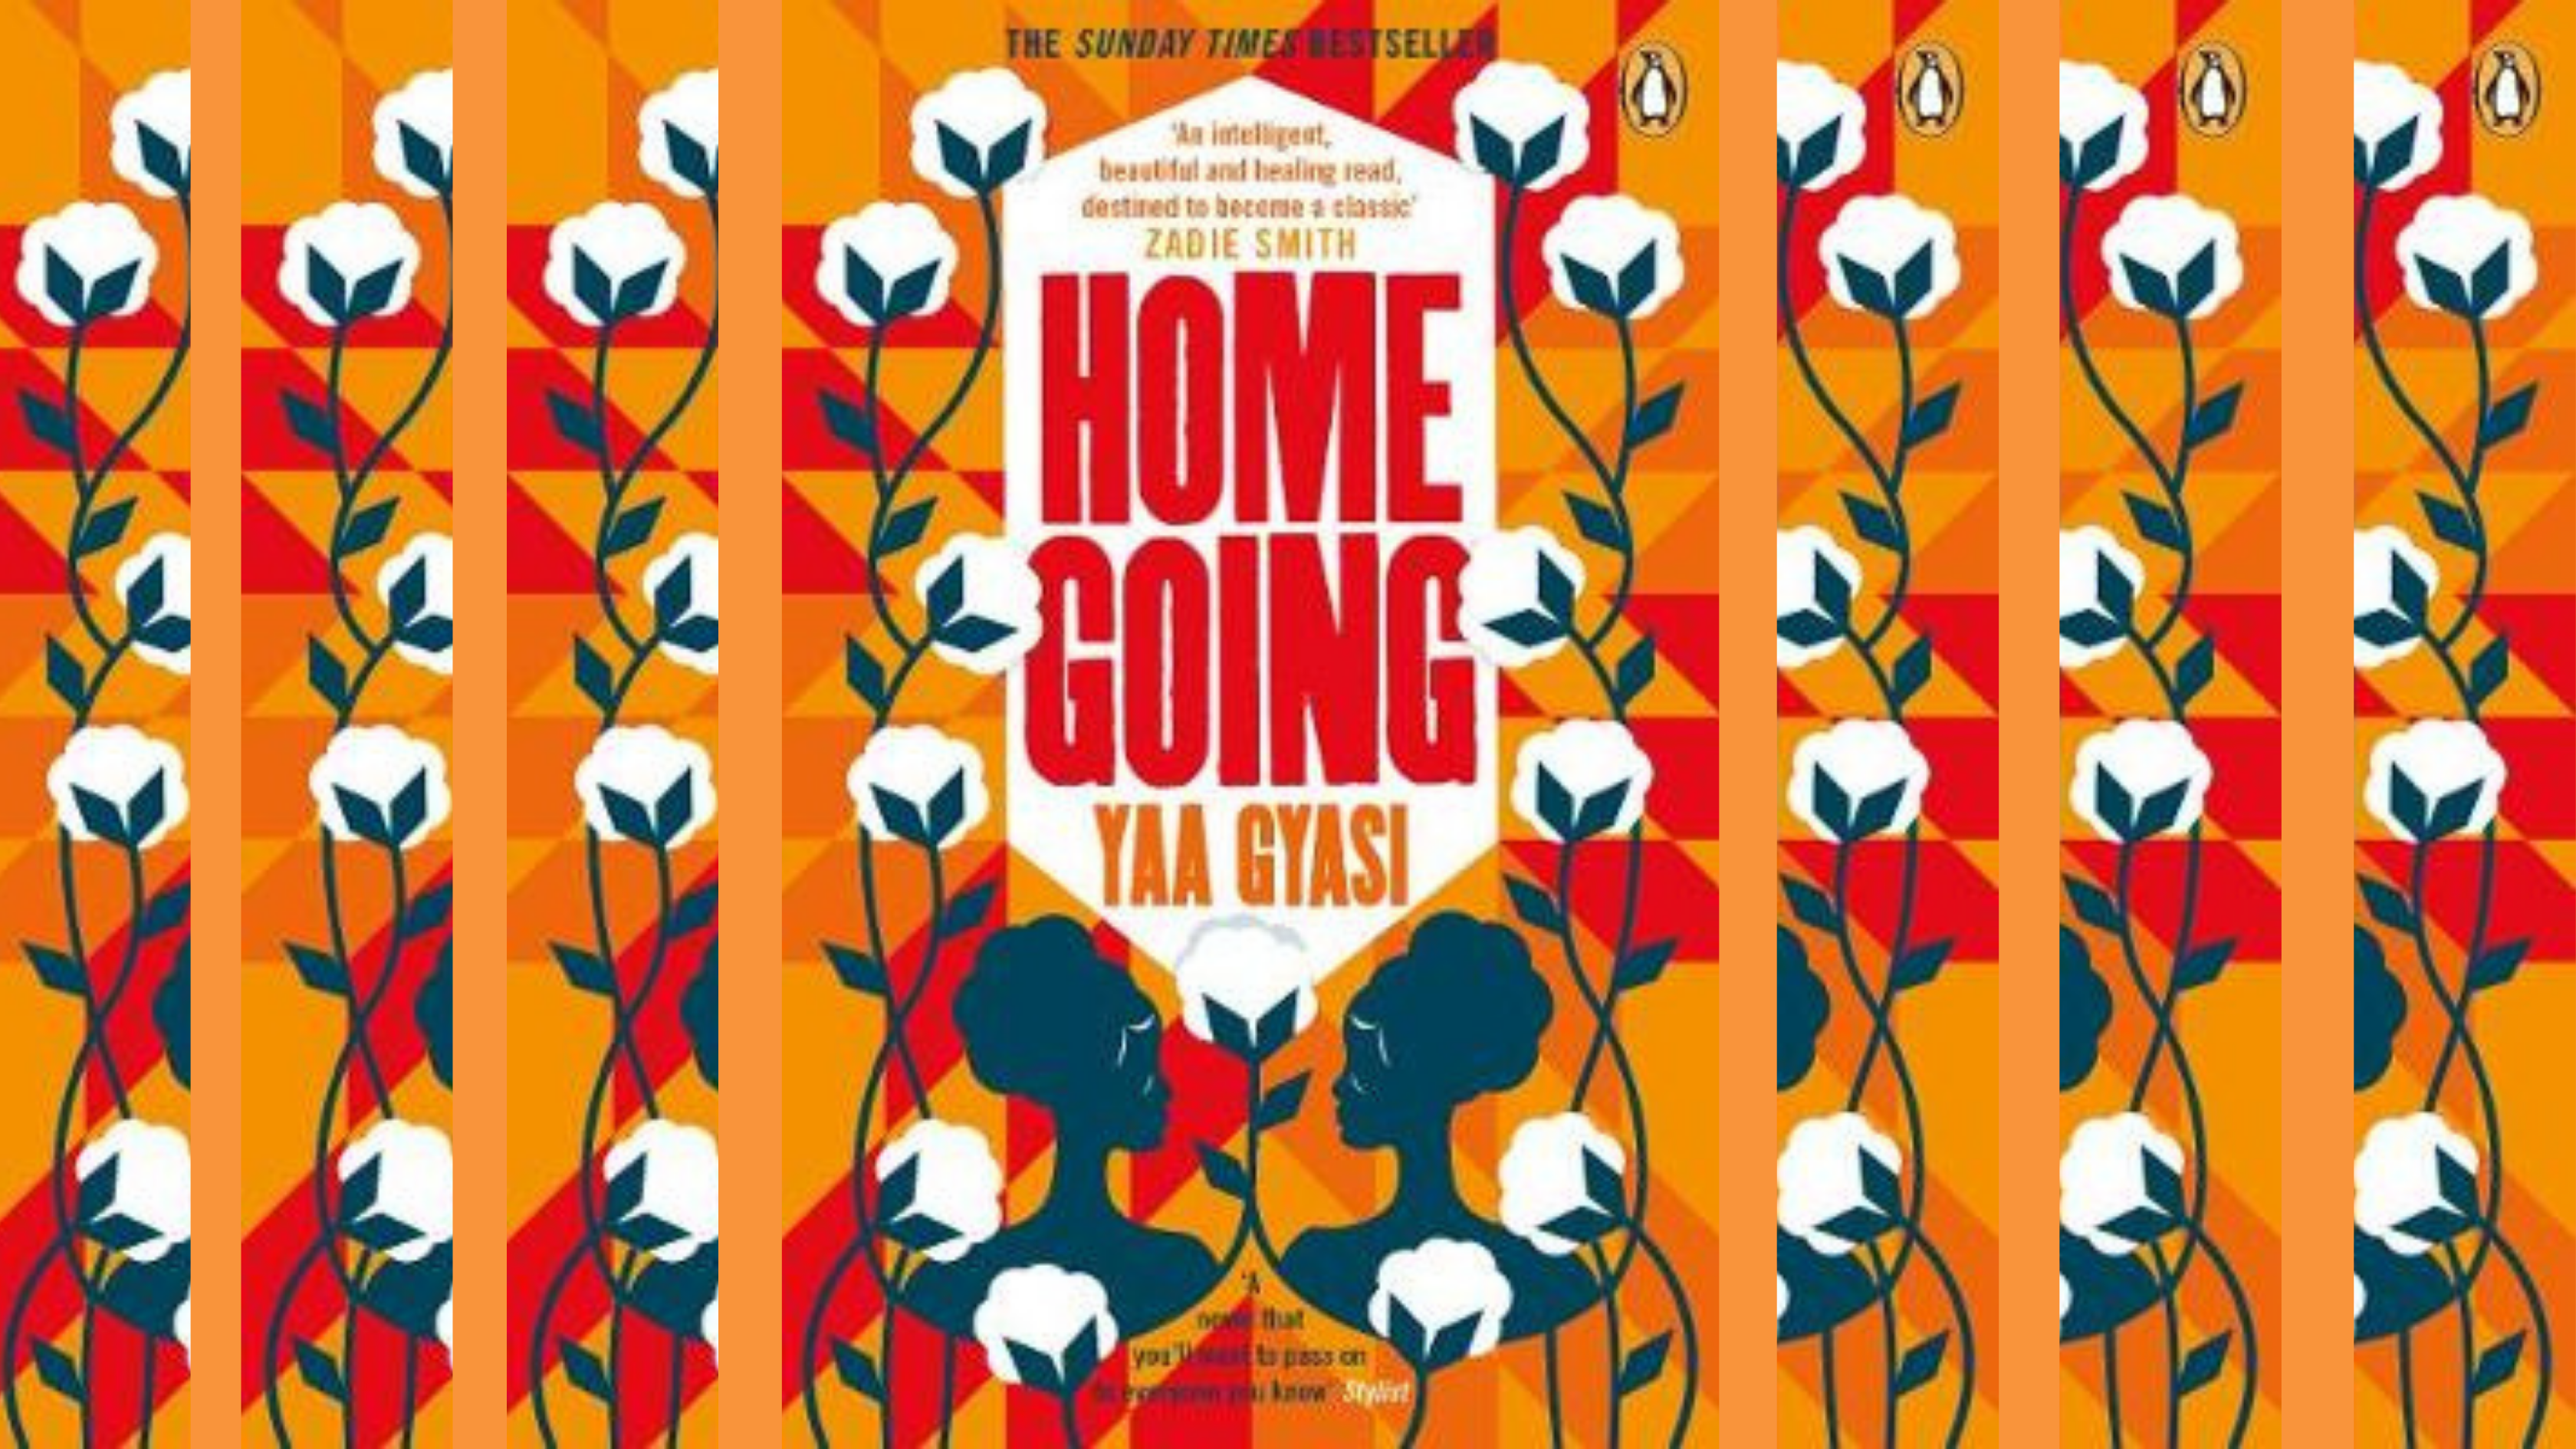 Homegoing, Yaa Gyasi – Review